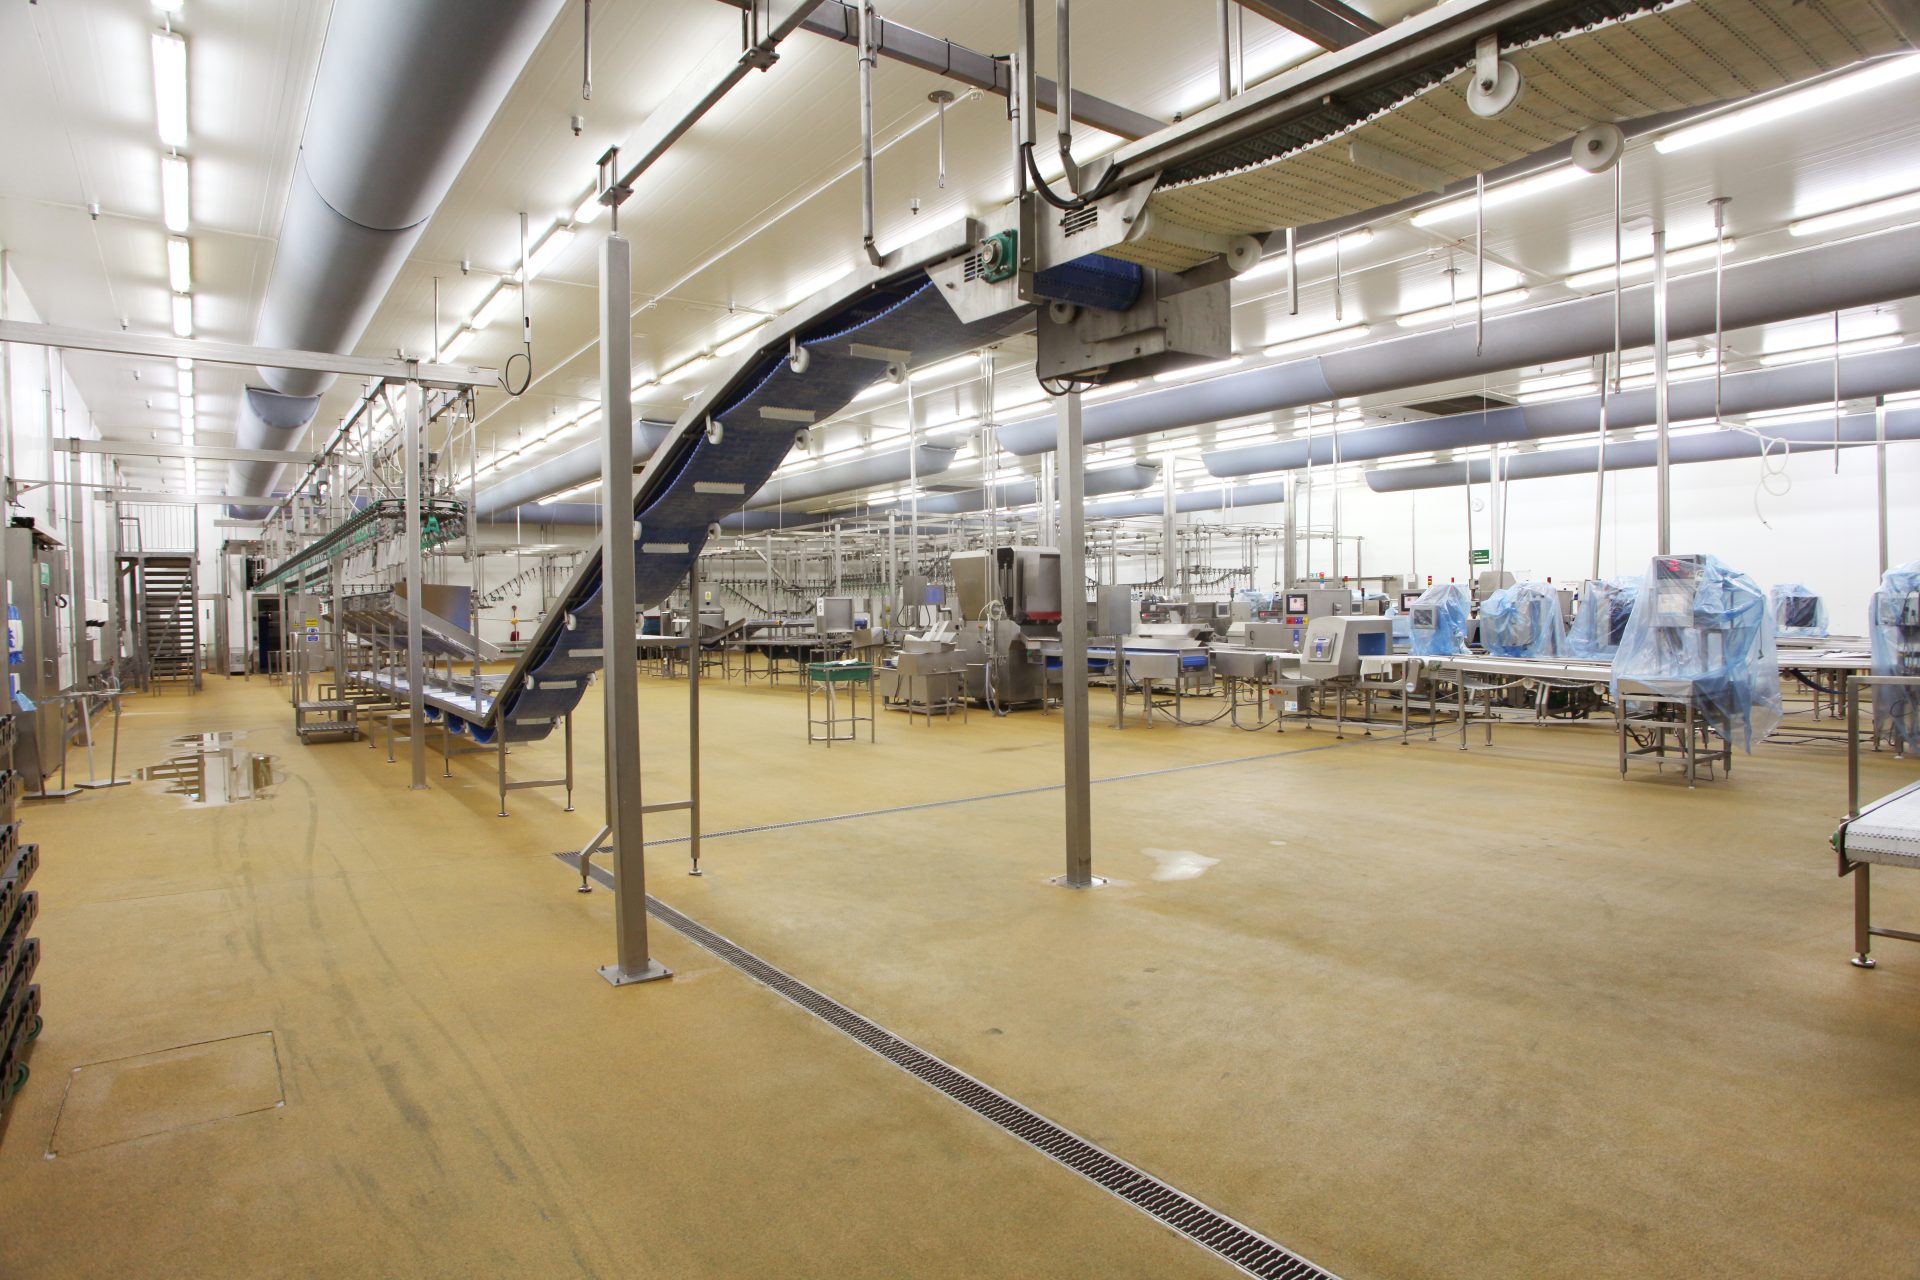 Resin flooring installation for Major Food Processor